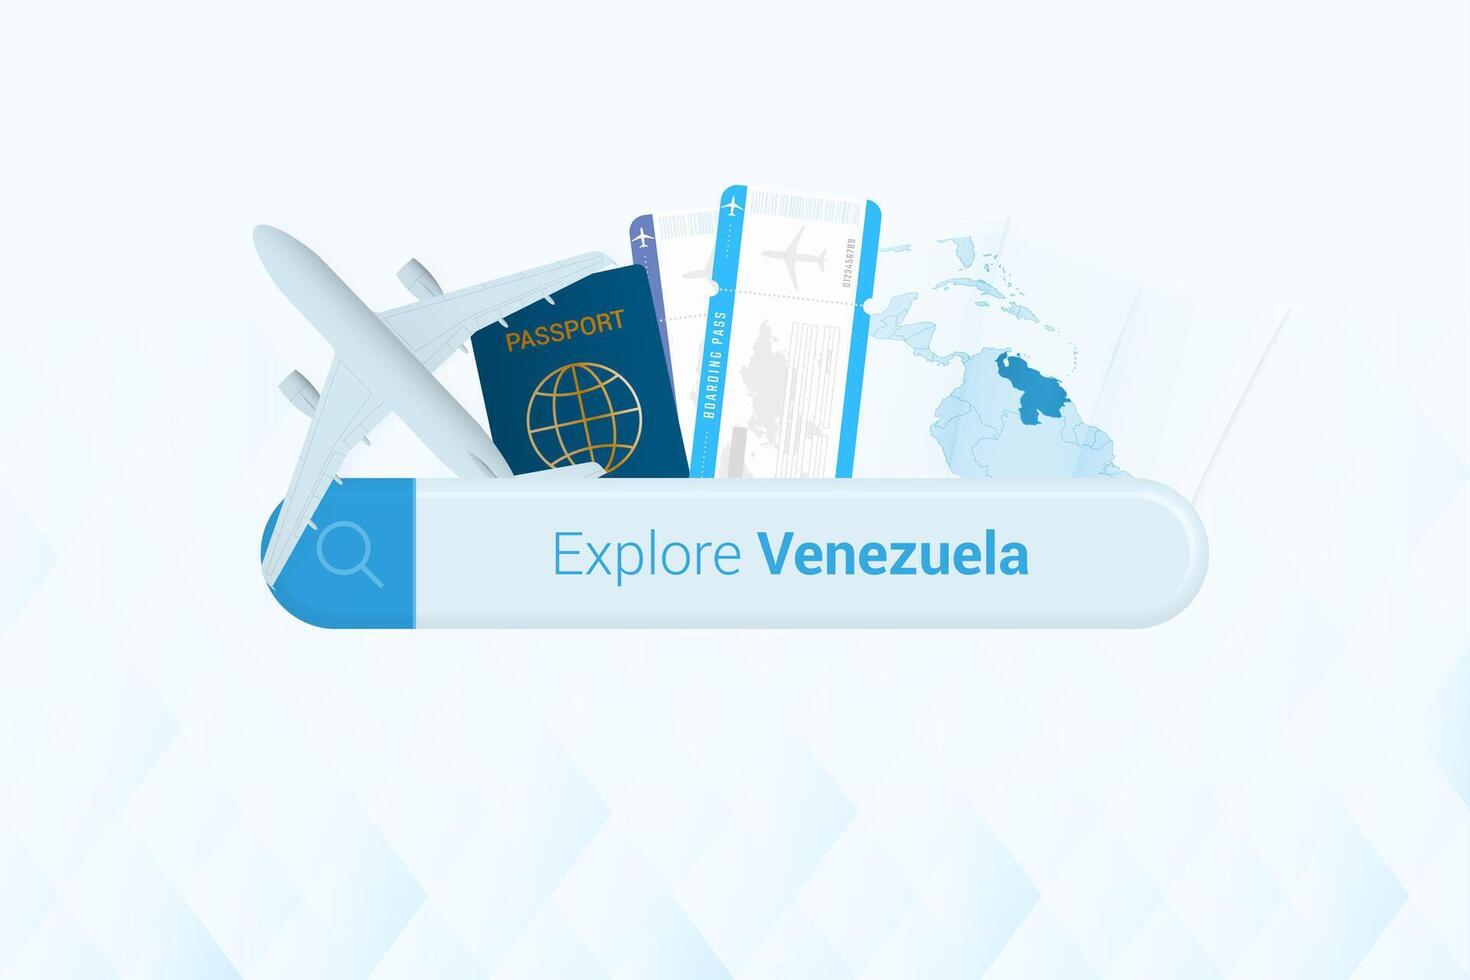 procurando bilhetes para Venezuela ou viagem destino dentro Venezuela. procurando Barra com avião, Passaporte, embarque passar, bilhetes e mapa. vetor